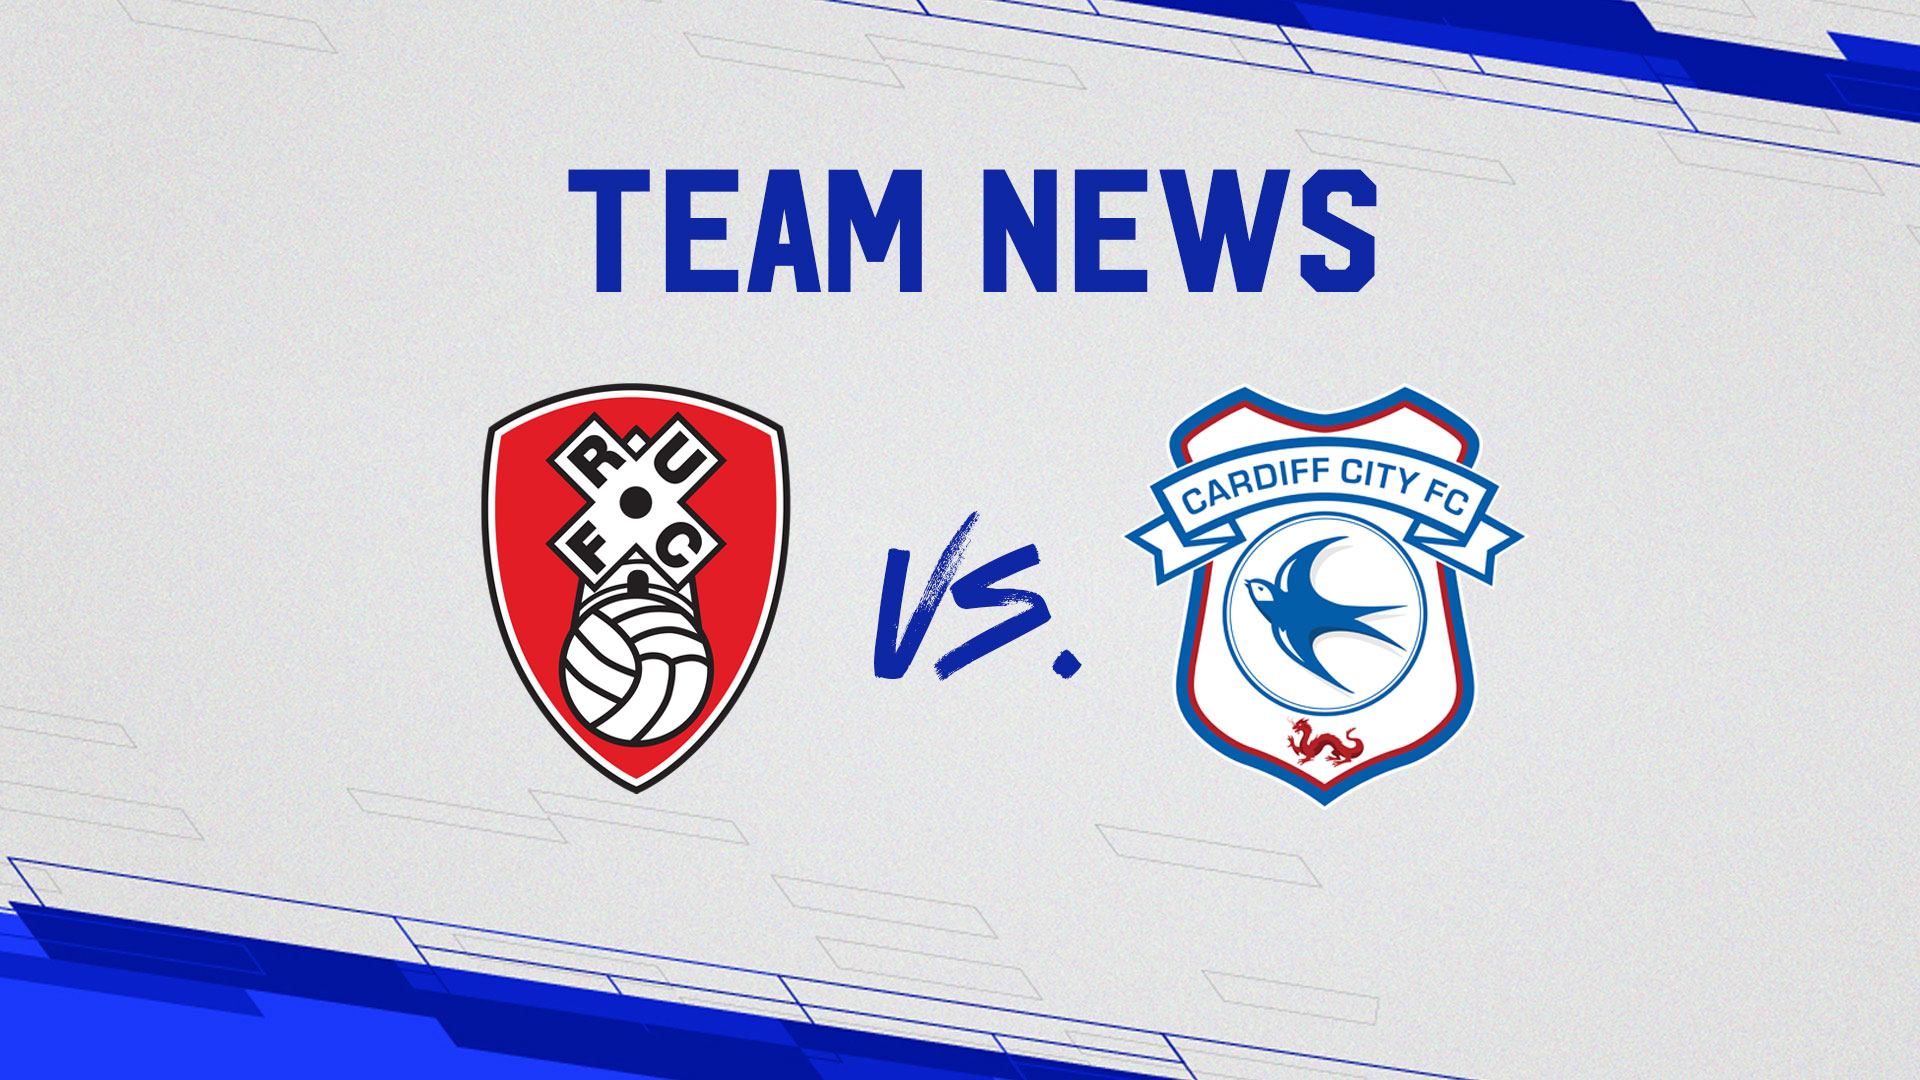 Team News | Rotherham United vs. Cardiff City